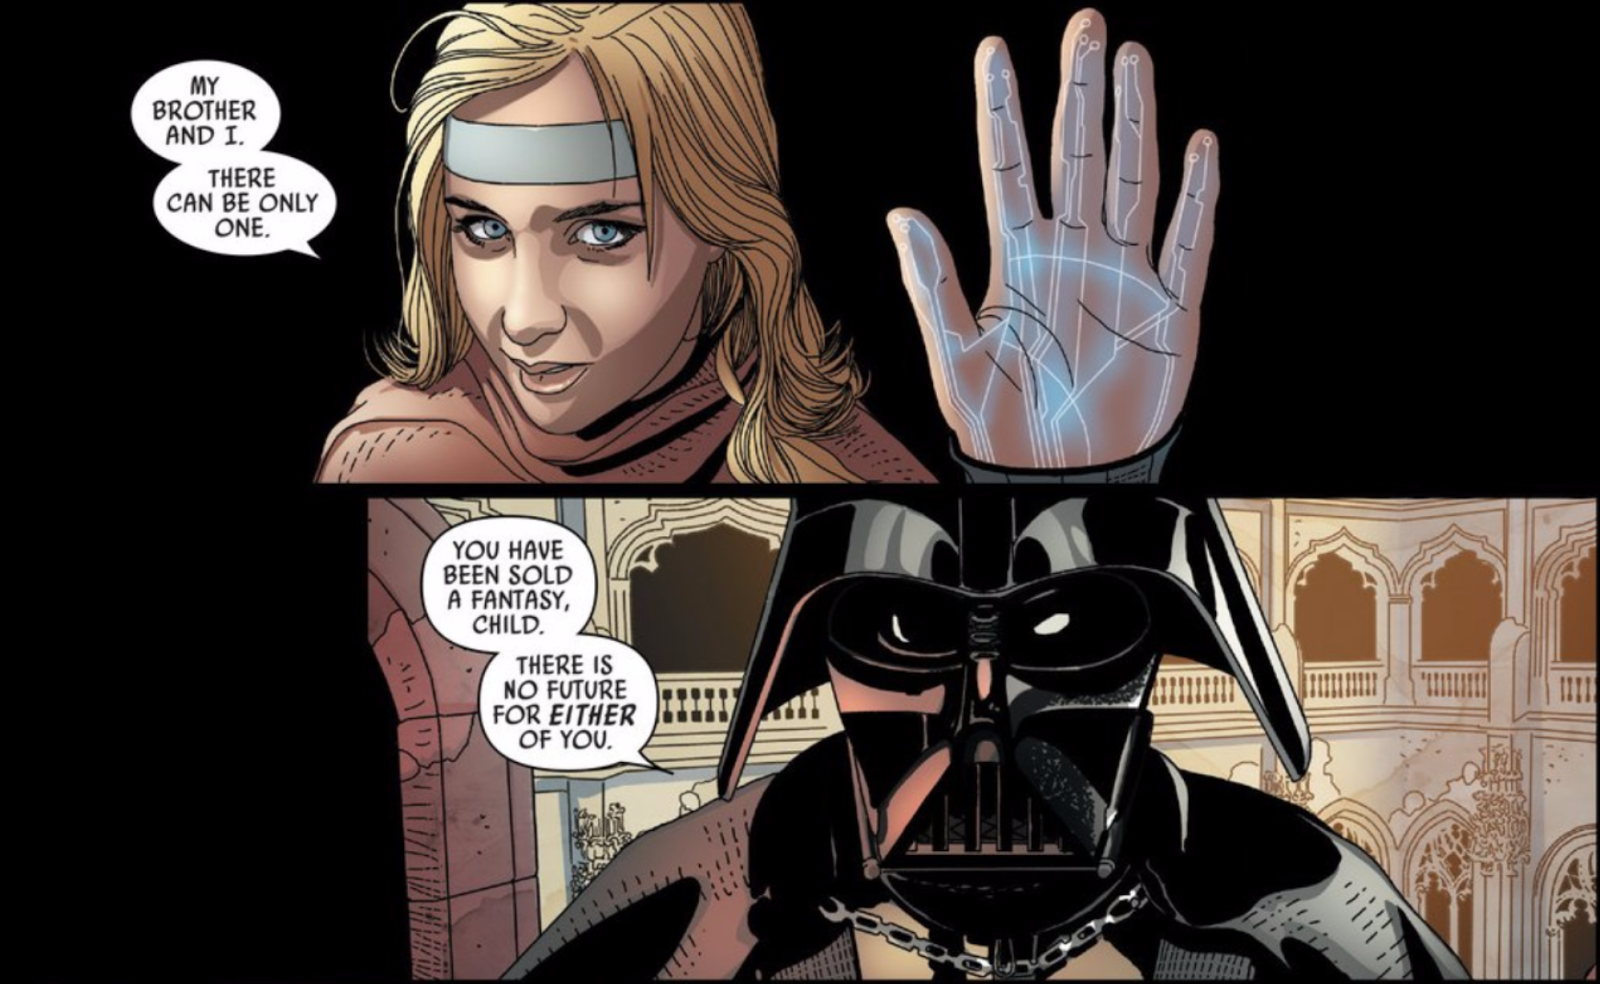 Darth Vader Doesn’t Do Pep Talks